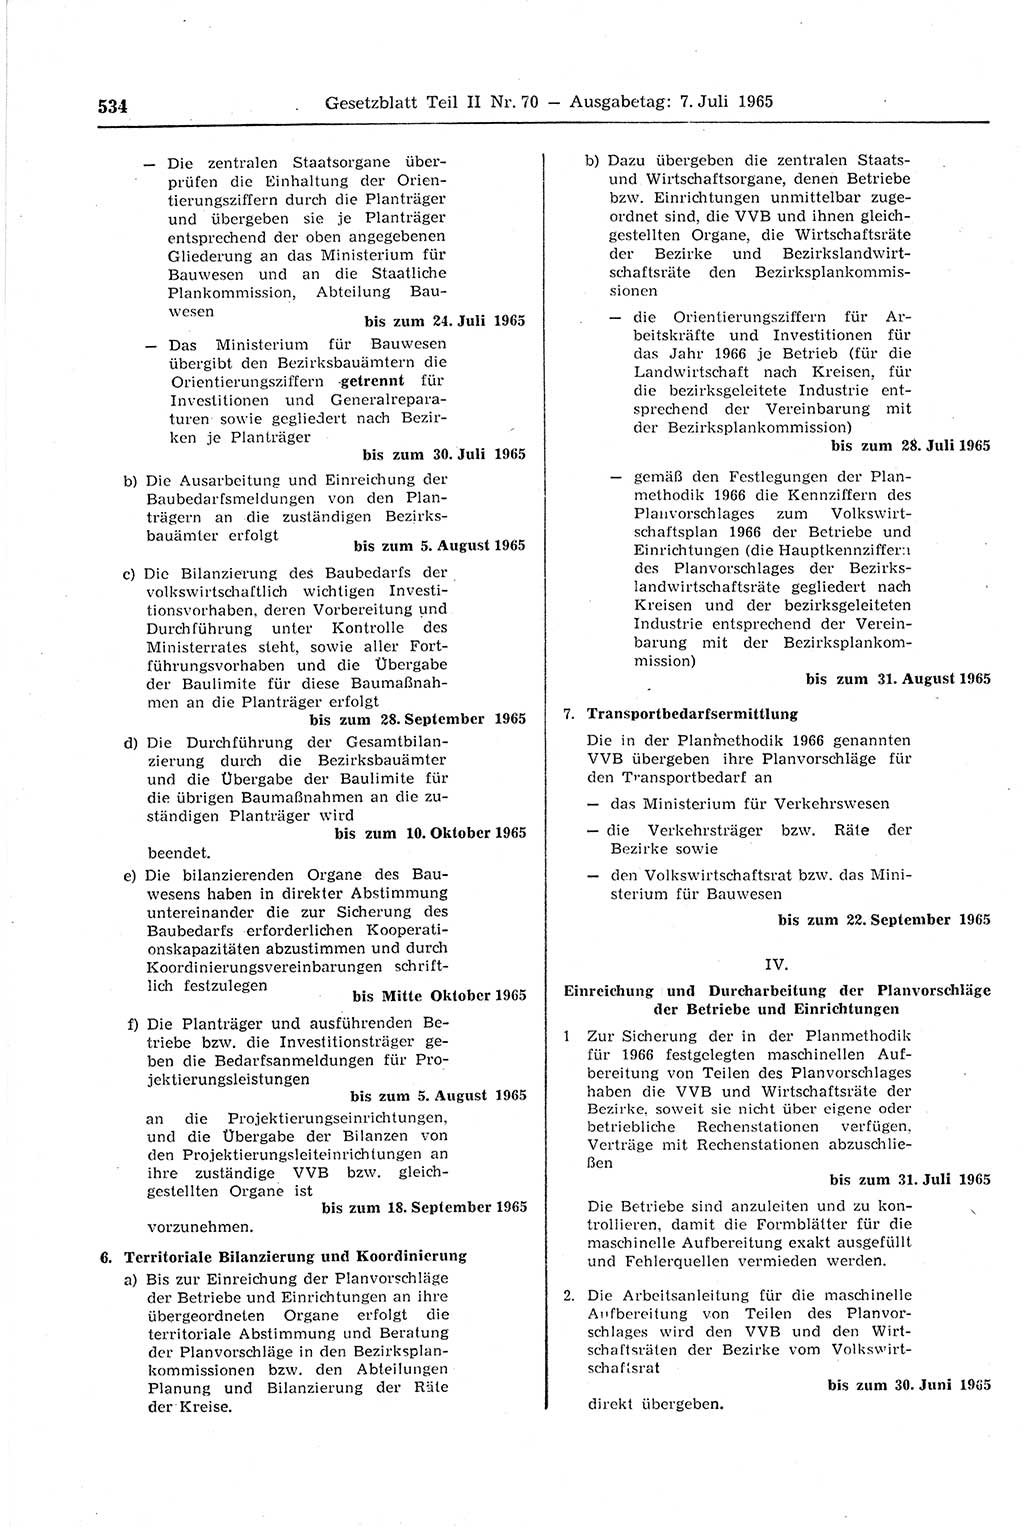 Gesetzblatt (GBl.) der Deutschen Demokratischen Republik (DDR) Teil ⅠⅠ 1965, Seite 534 (GBl. DDR ⅠⅠ 1965, S. 534)